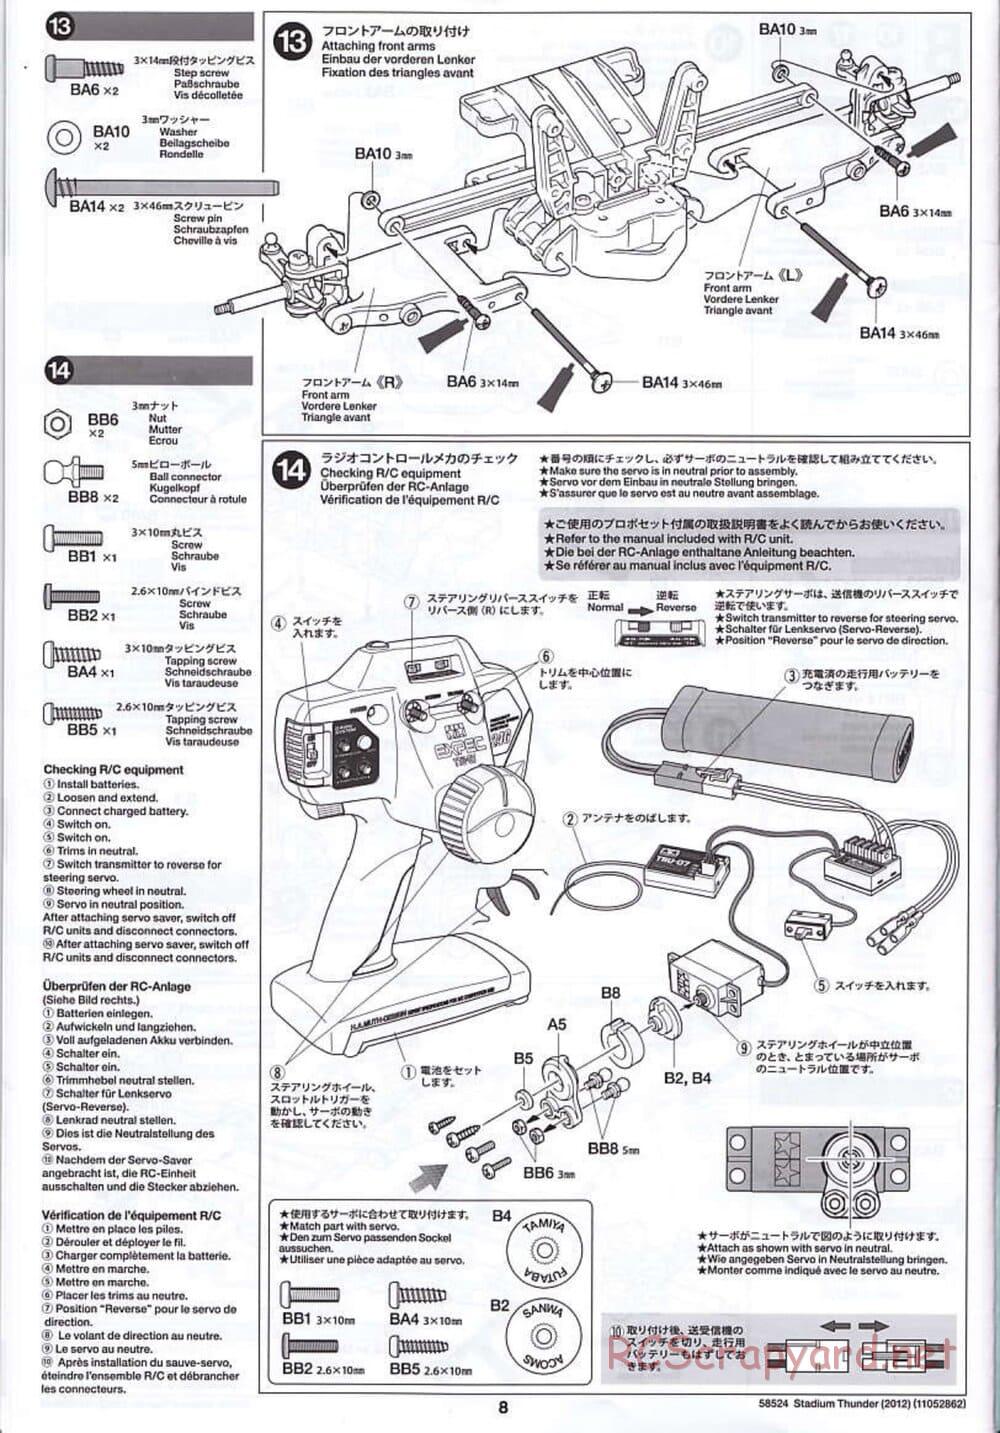 Tamiya - Stadium Thunder 2012 - FAL Chassis - Manual - Page 8